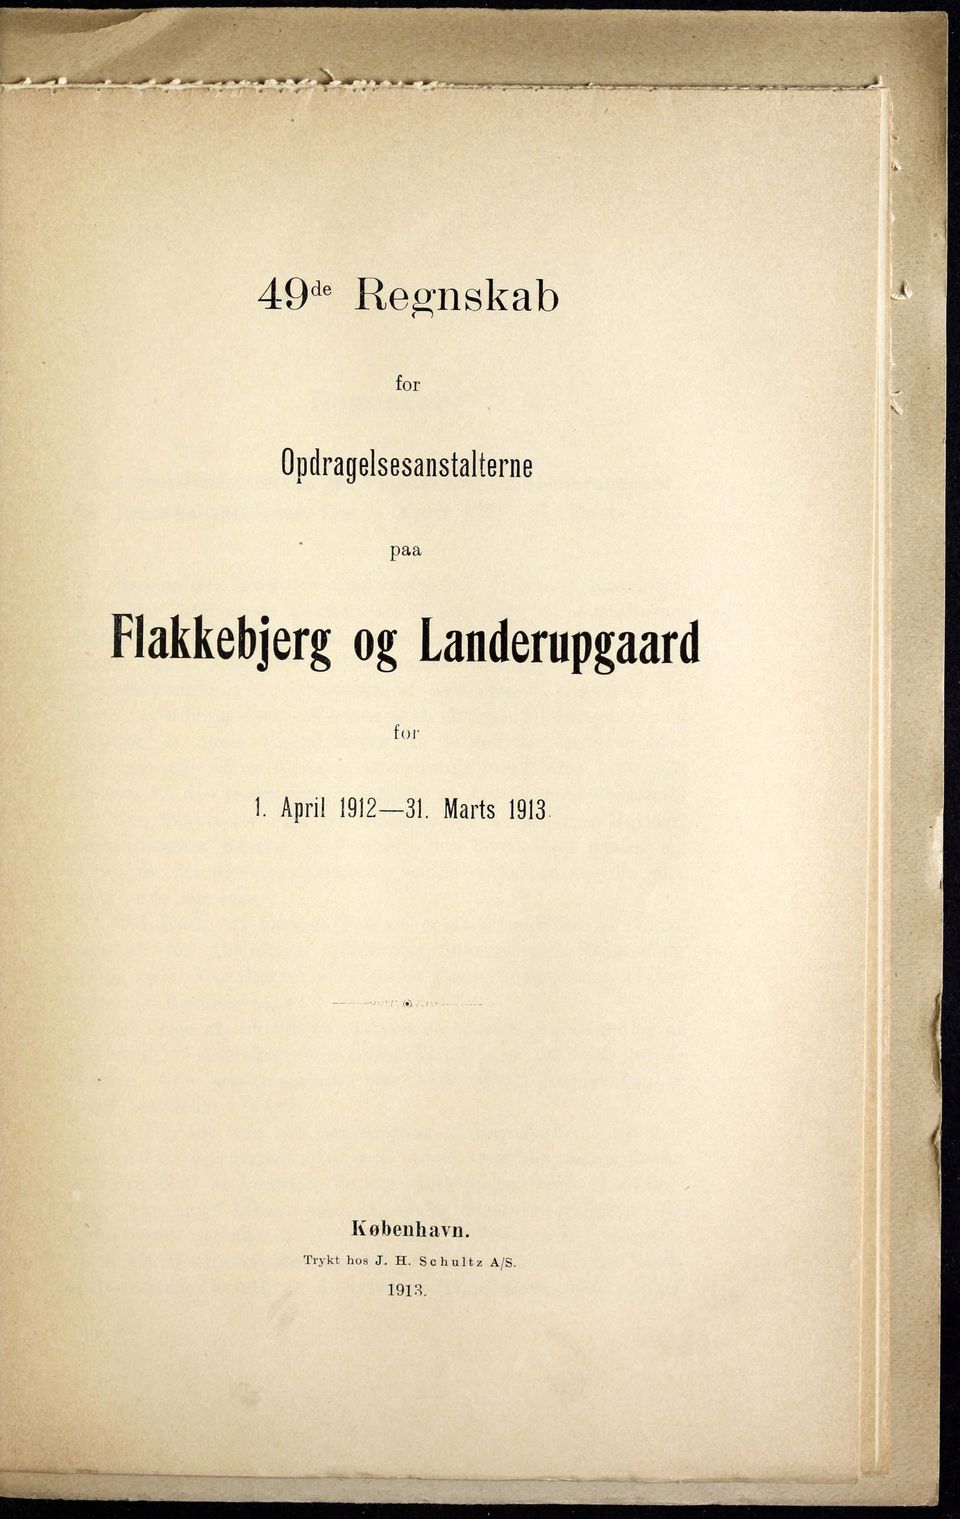 Landerupgaard for ]. April 1912 31.